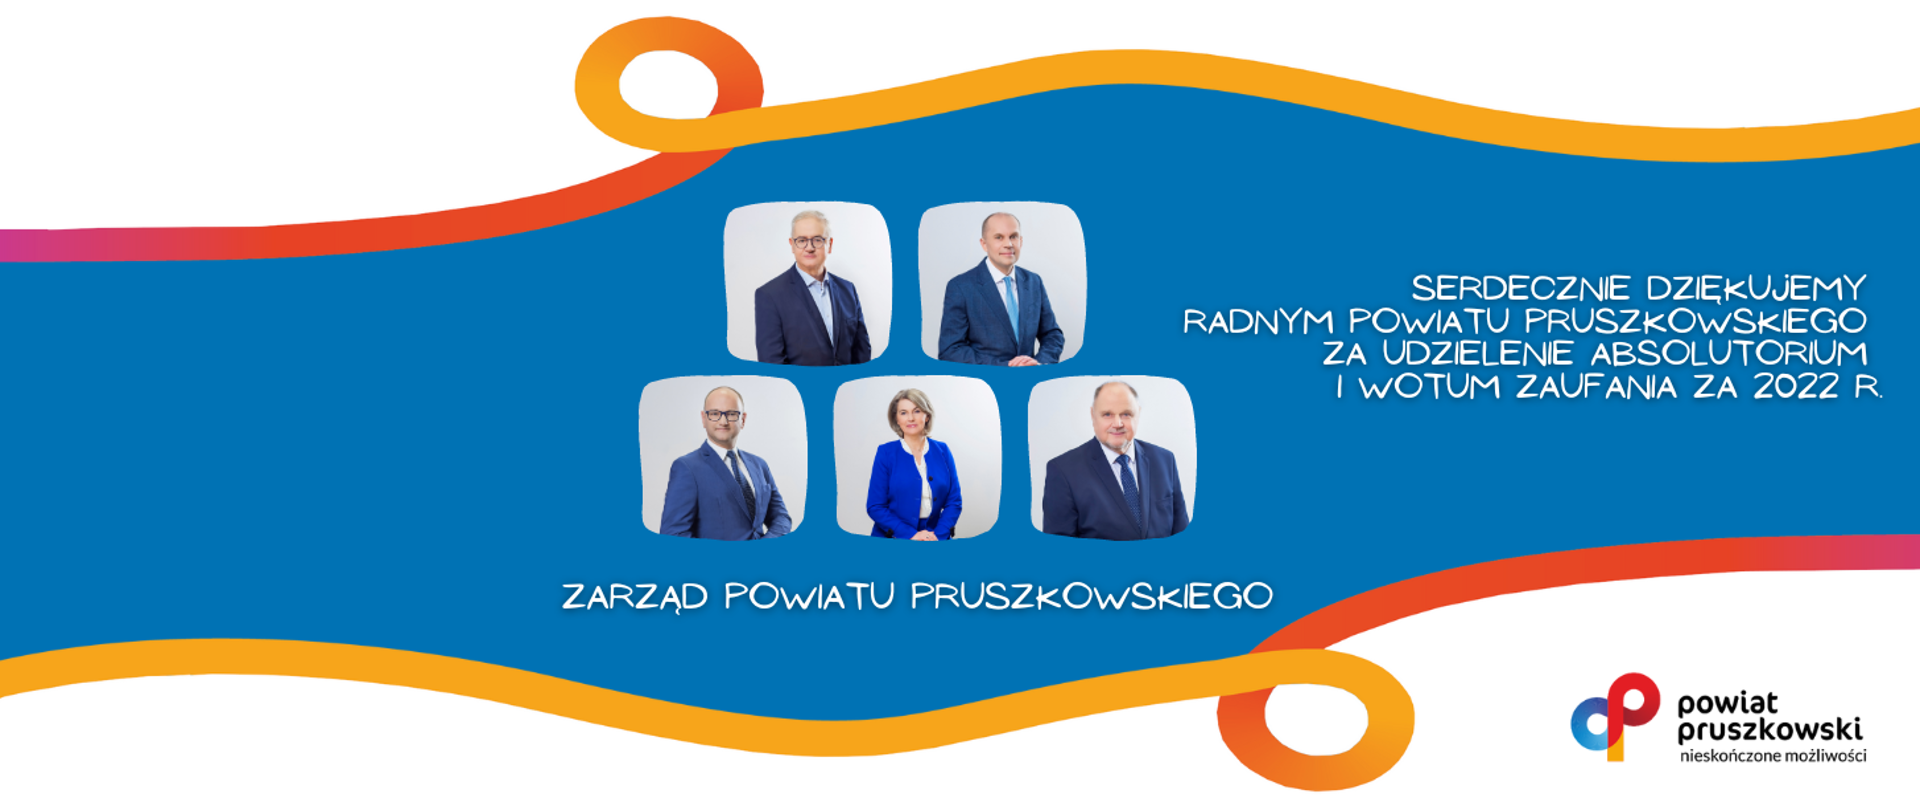 Zarząd Powiatu Pruszkowskiego z wotum zaufania i absolutorium za 2022 rok